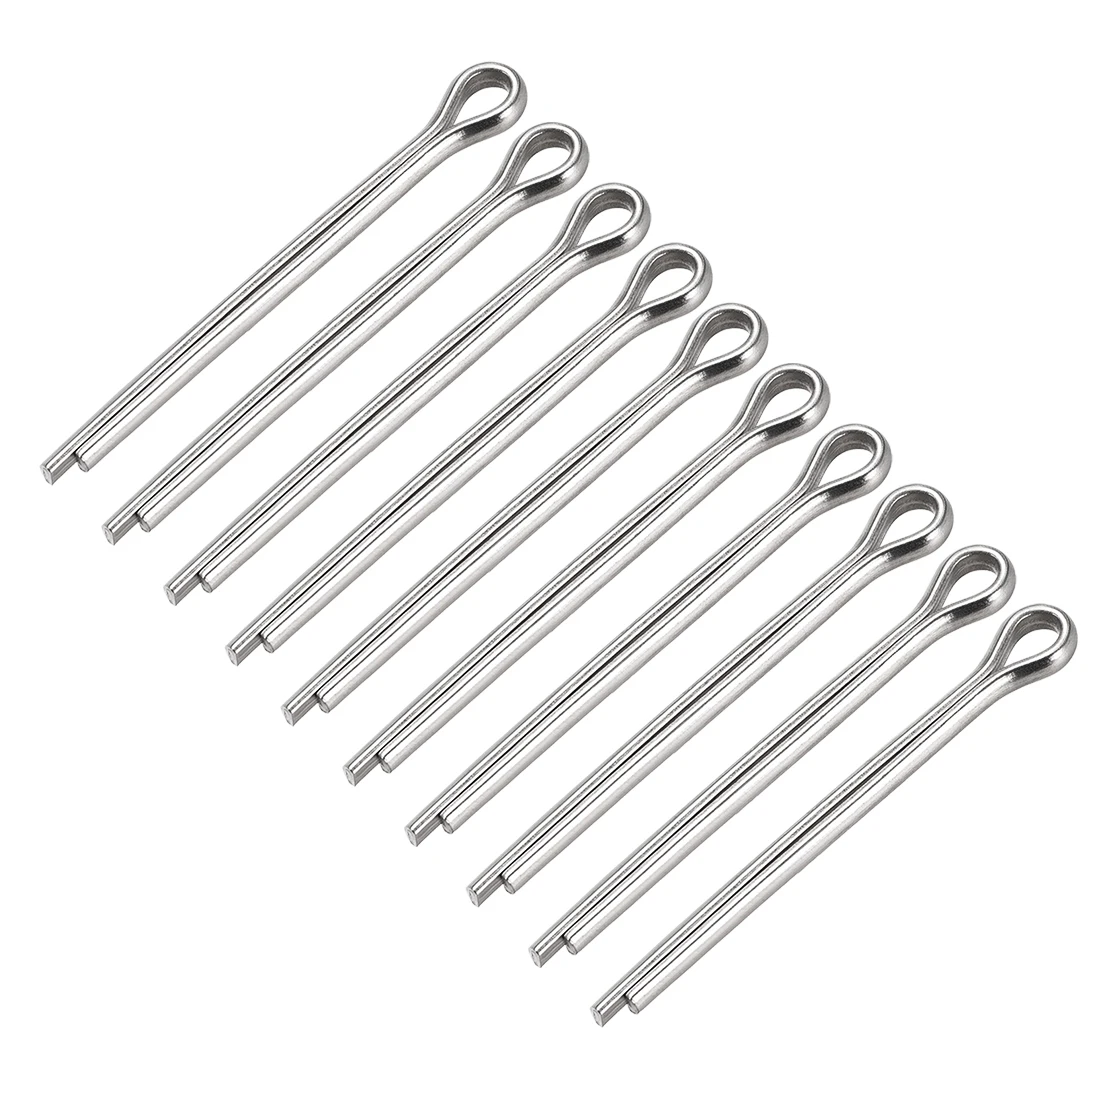 304 Stainless Steel Select Size Ø1 Ø1.5 Ø2 Ø2.5mm Split-Cotter Pins 